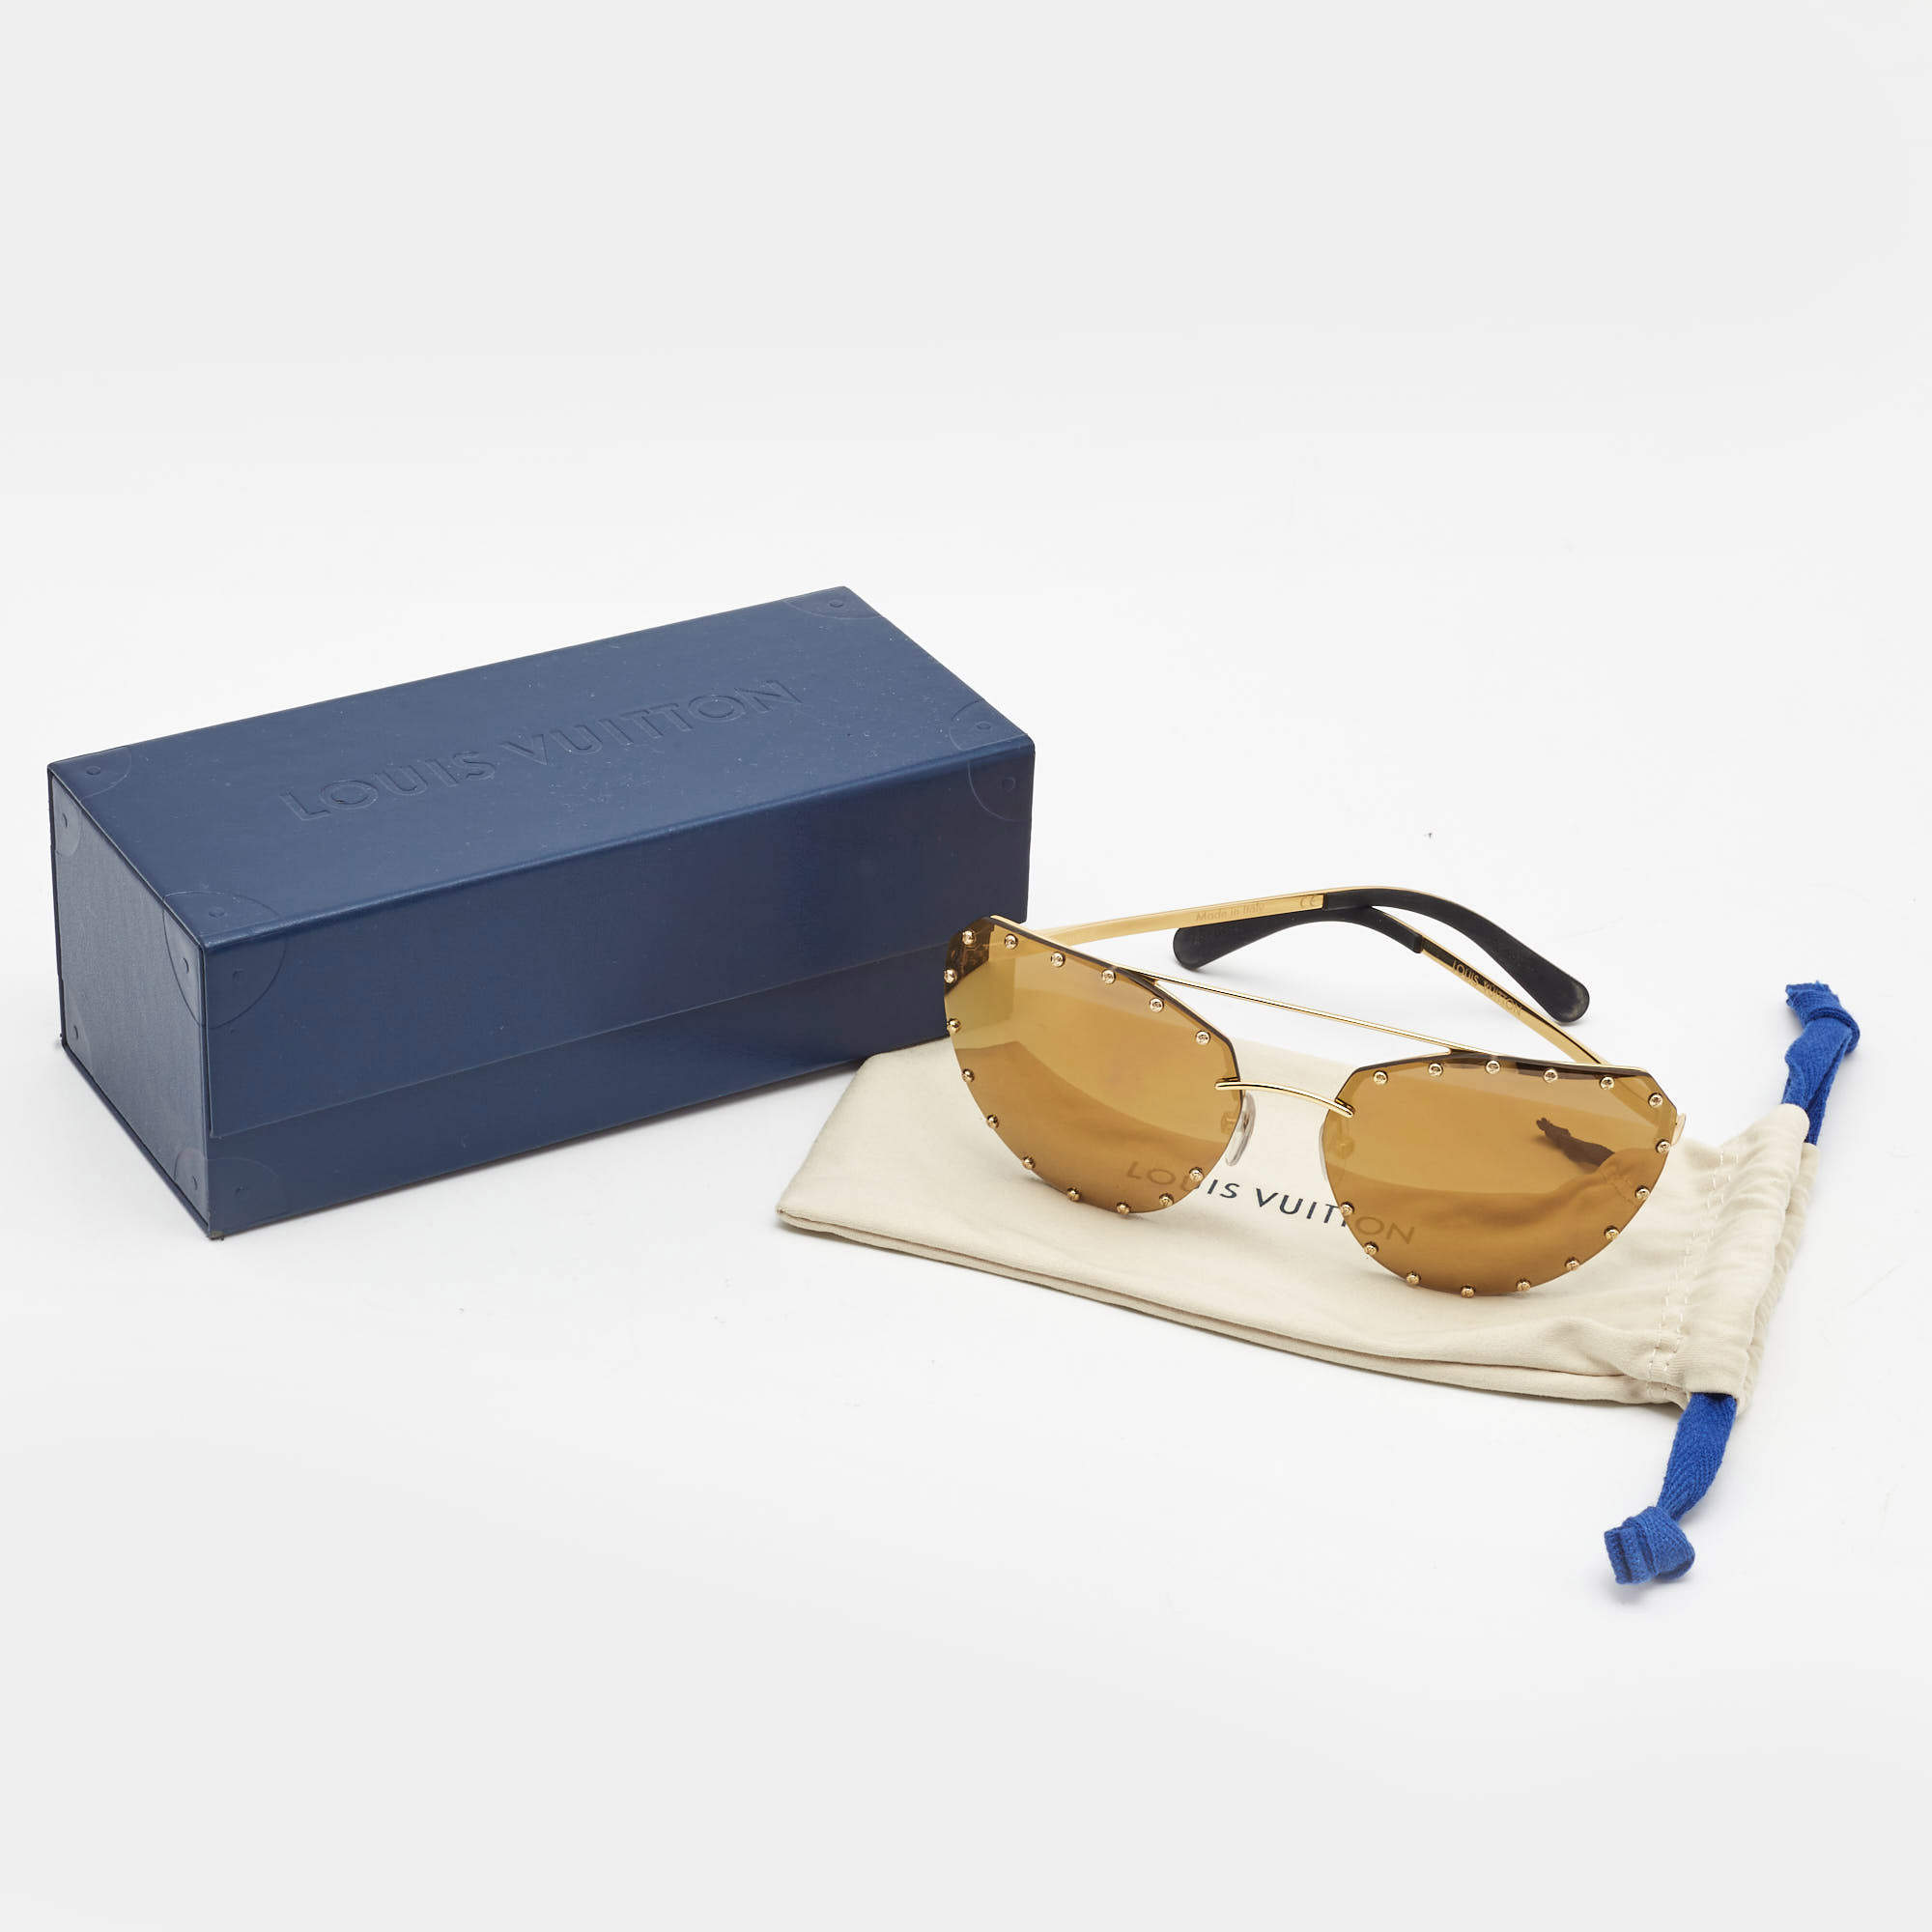 💯 LV Louis Vuitton Party sunglasses w receipt - sold out